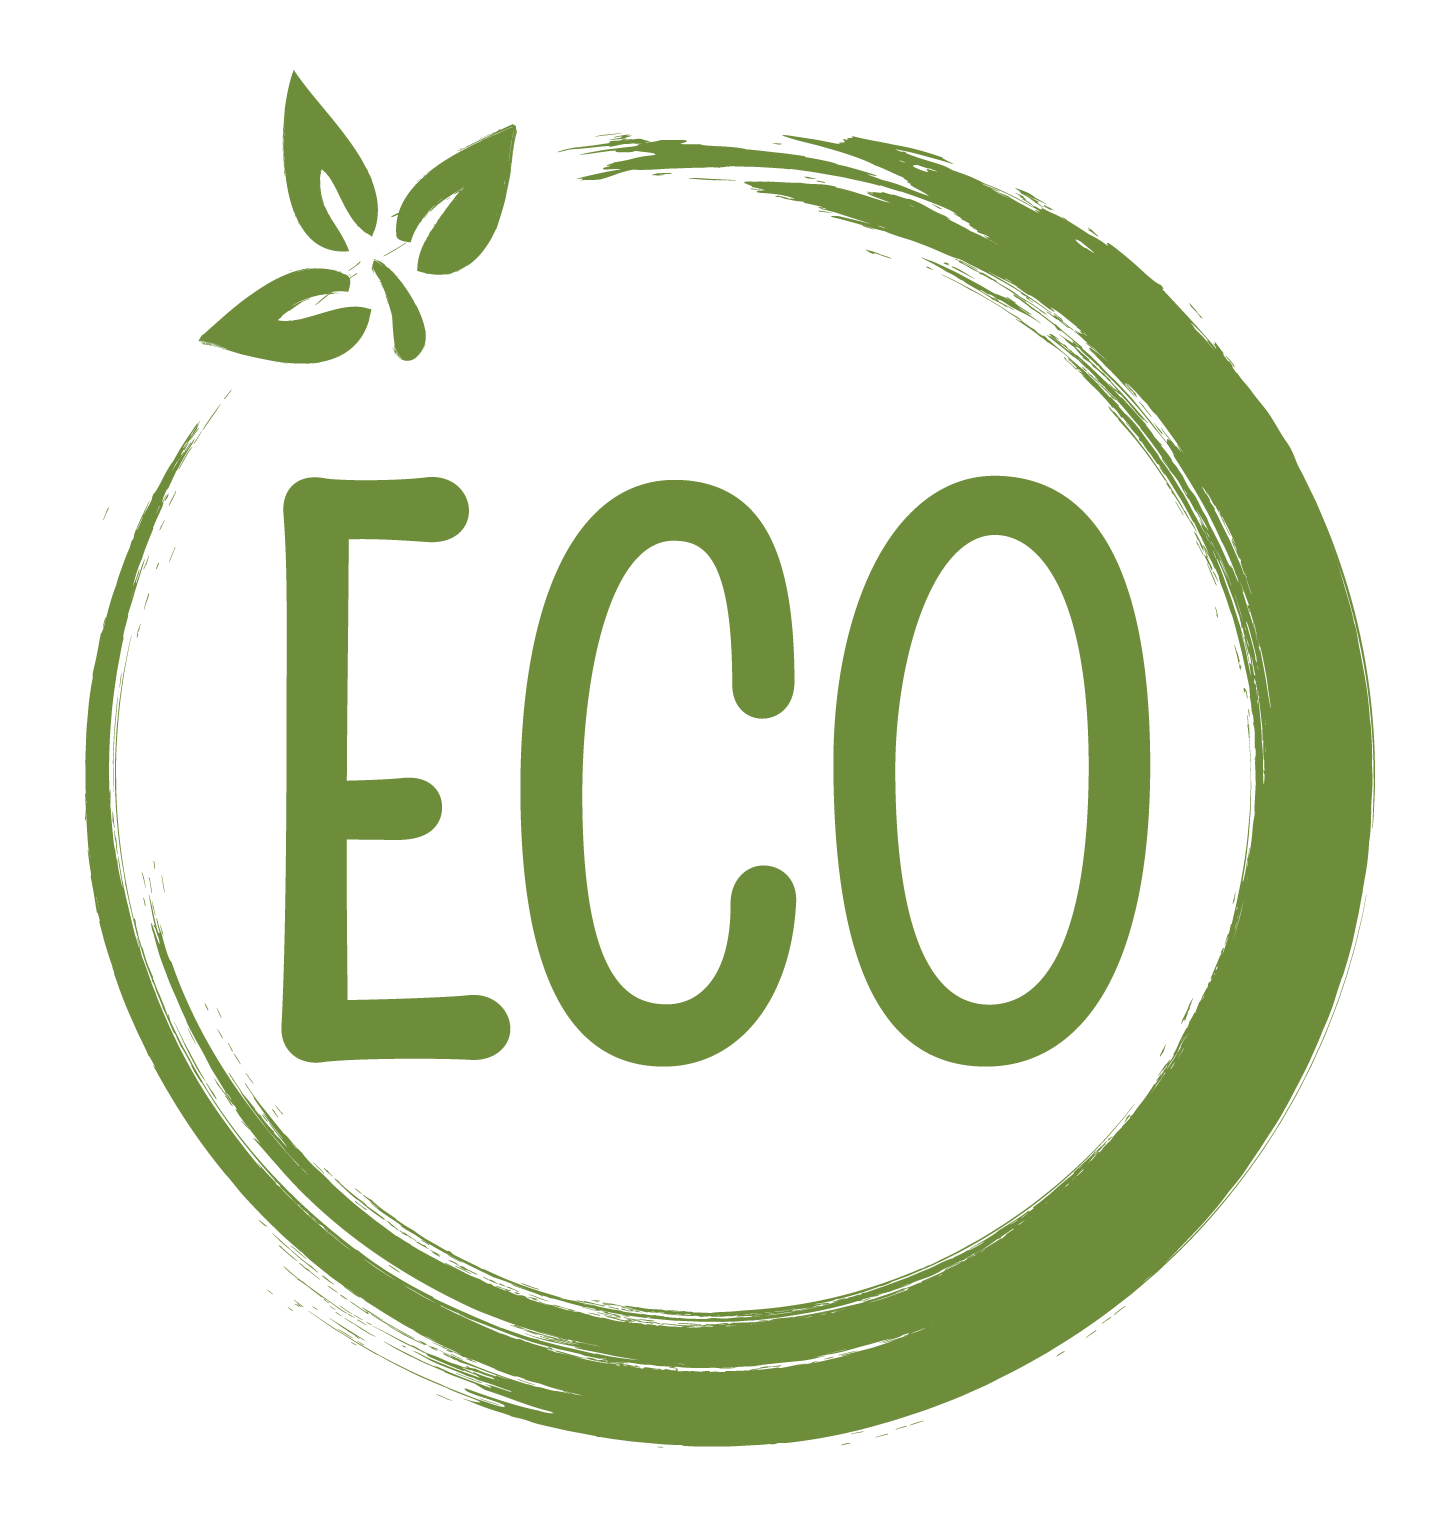 Эко. Логотип эко френдли. Экологически чистый значок. Значок экологически чистого продукта. Эко символ.